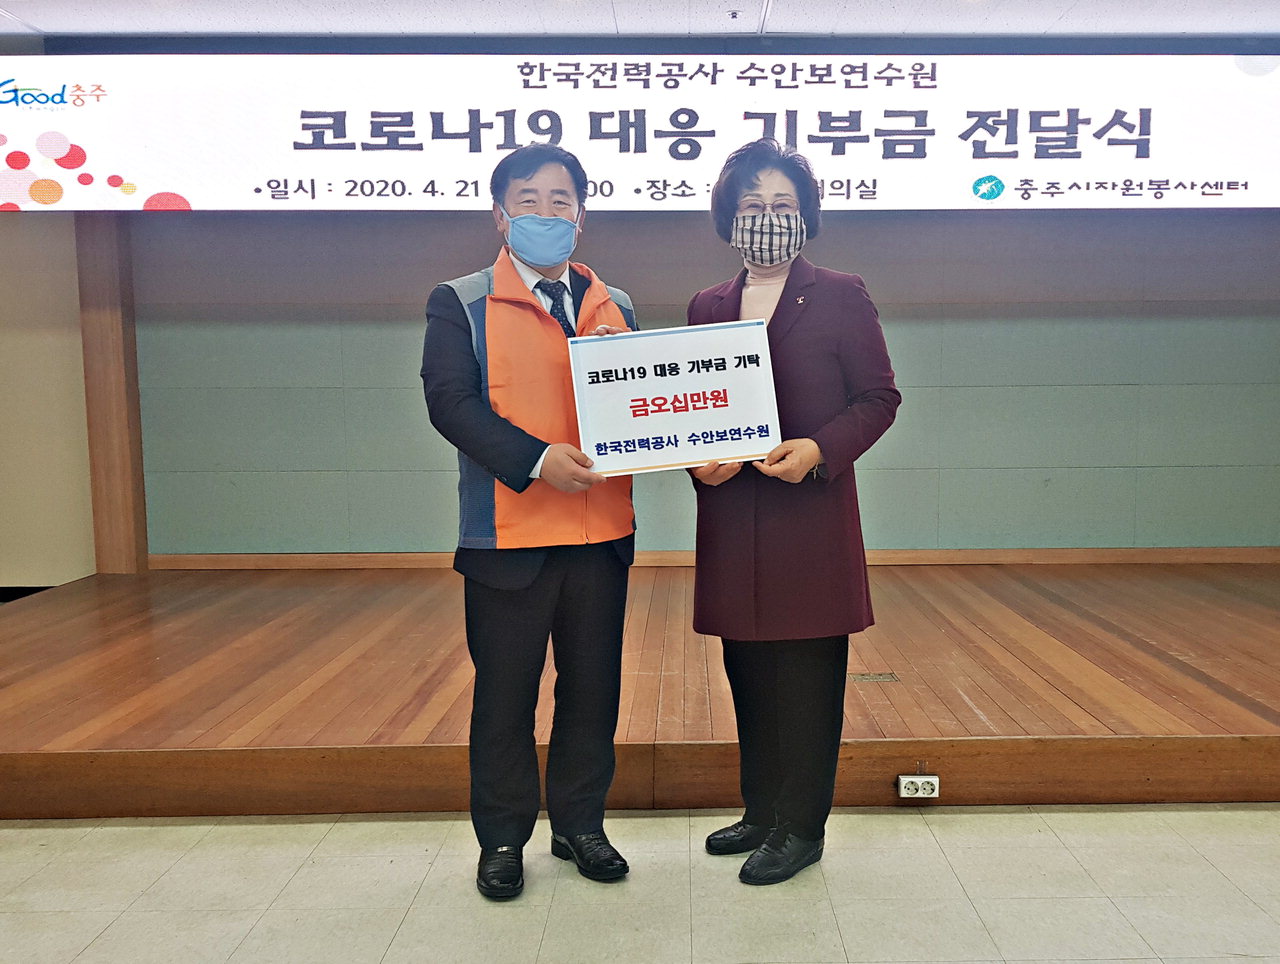 한국전력수안보연수원은 21일 충주시청 남한강회의실을 찾아 코로나19 확산 방지를 위한 후원금 50만원을 충주시자원봉사센터에 전달했다. / 충주시 제공